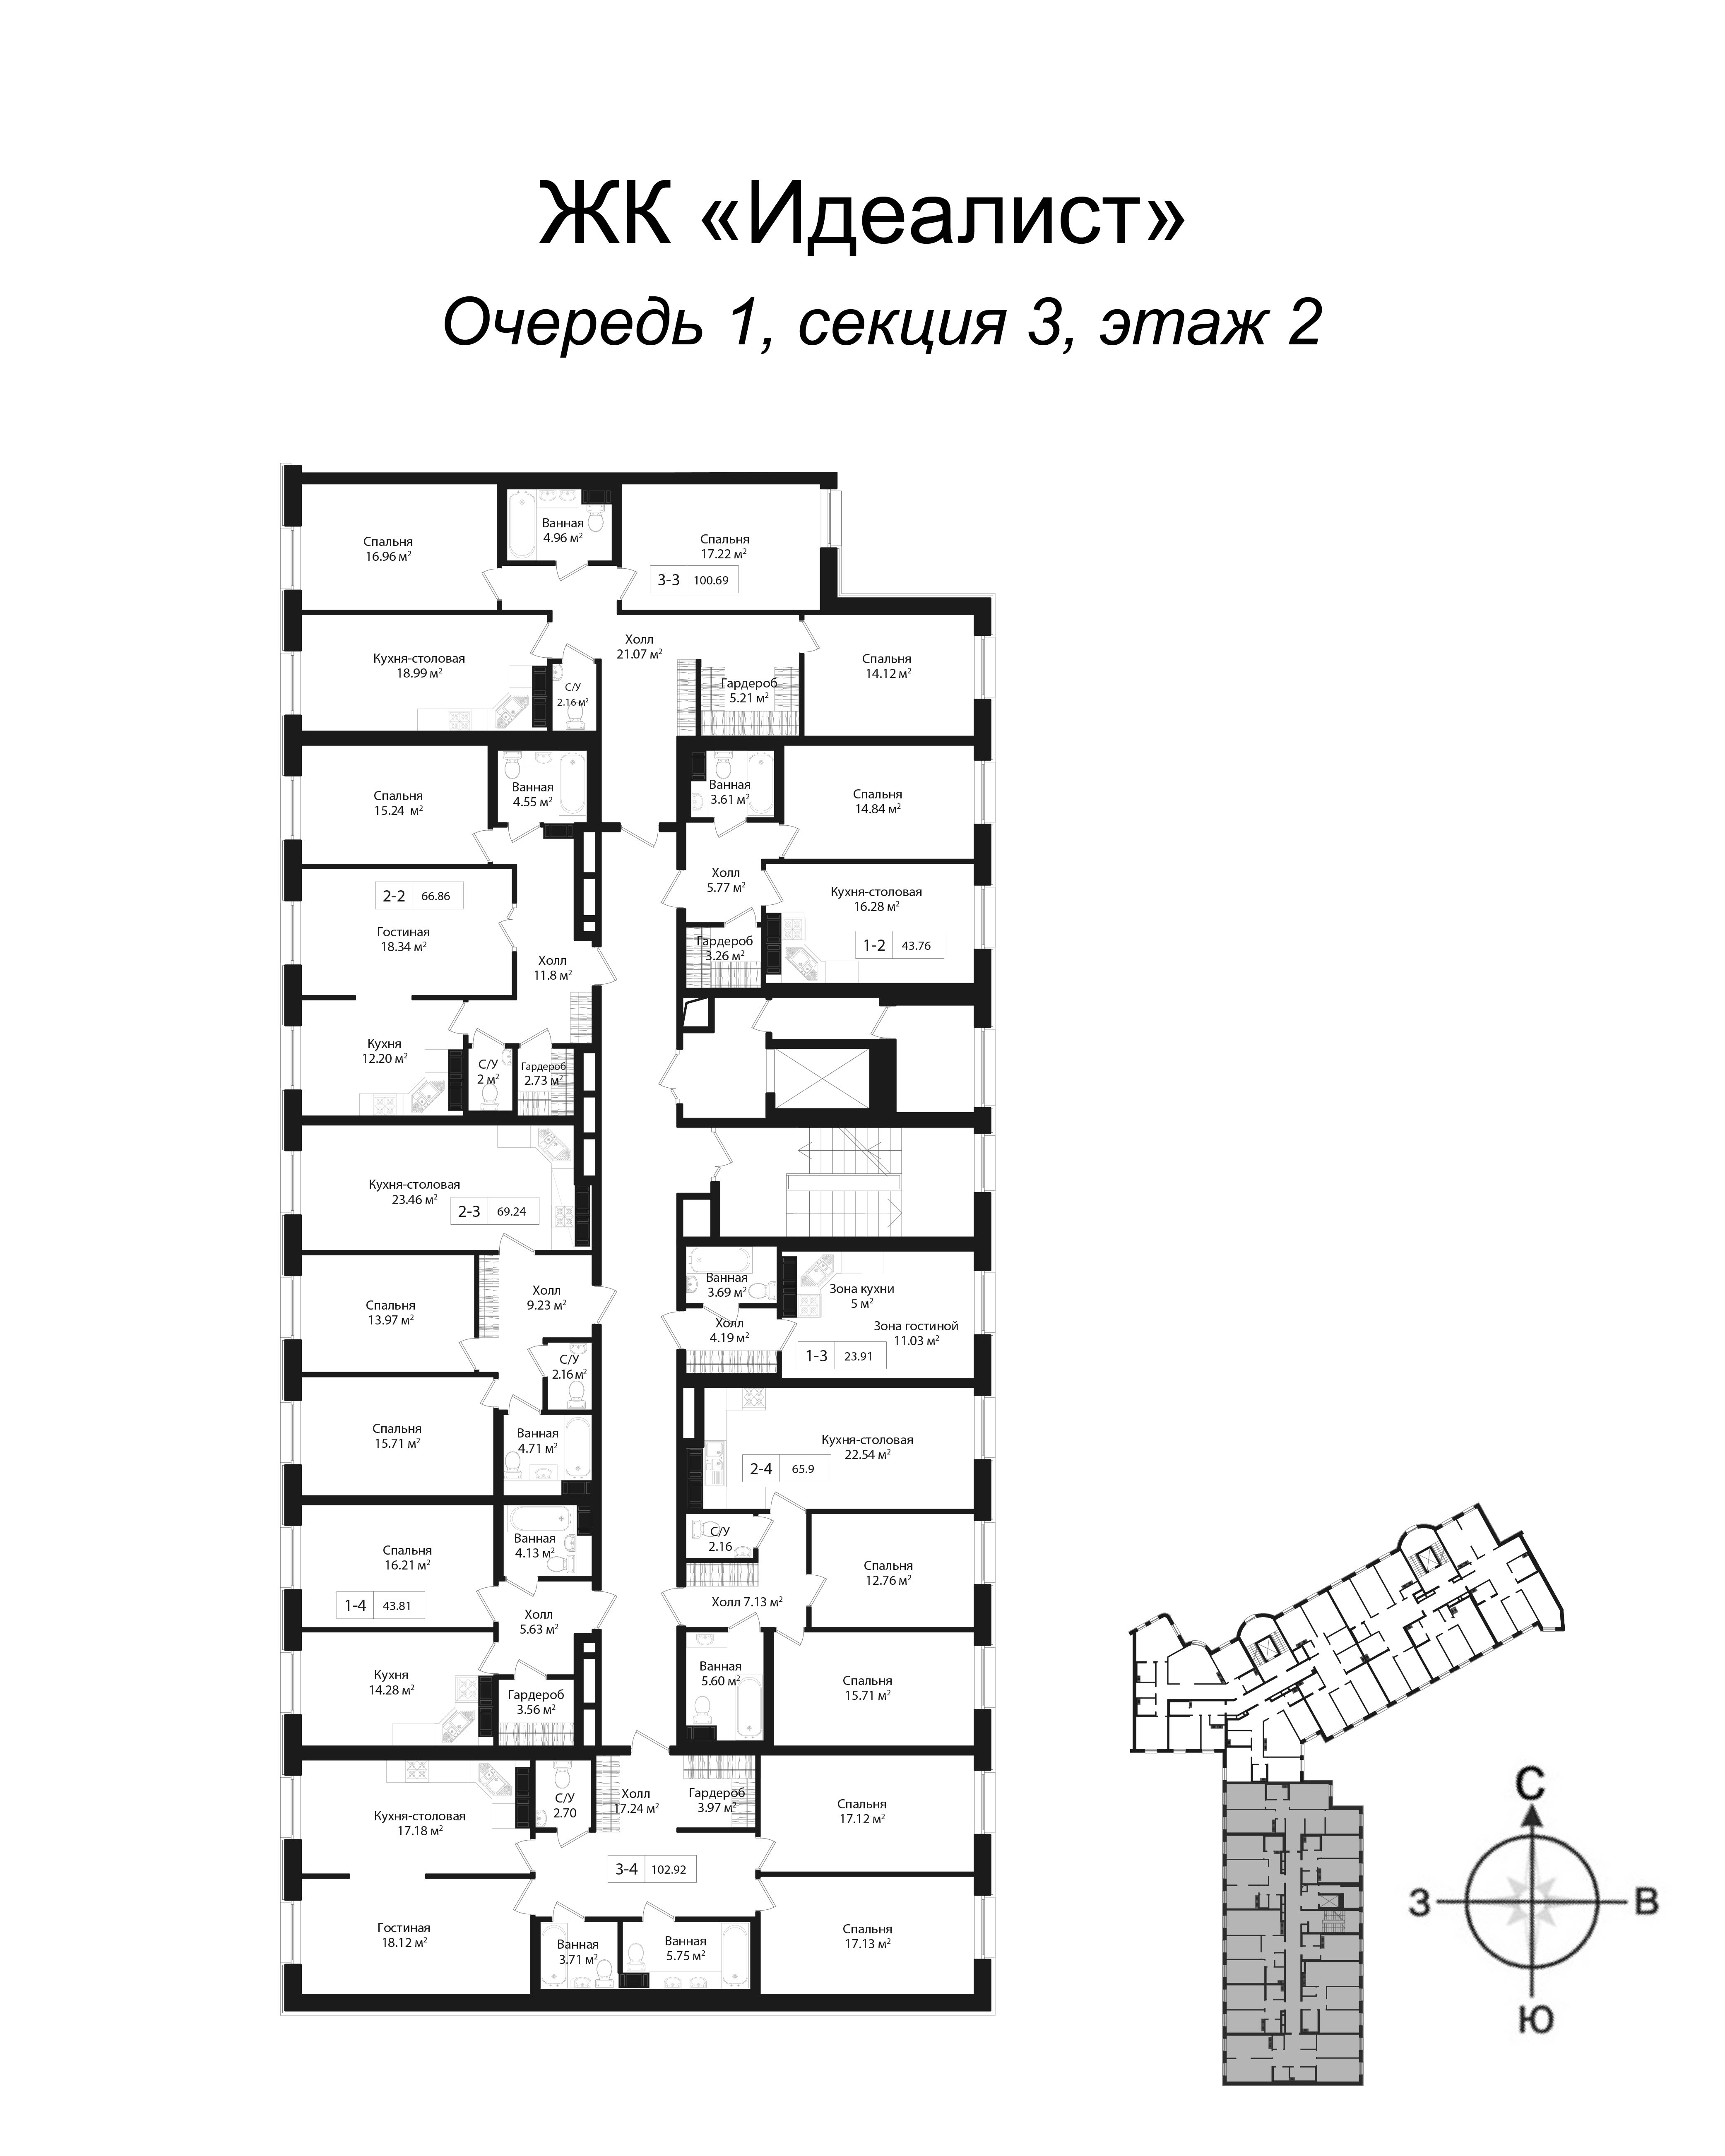 2-комнатная квартира, 67.9 м² в ЖК "Идеалист" - планировка этажа